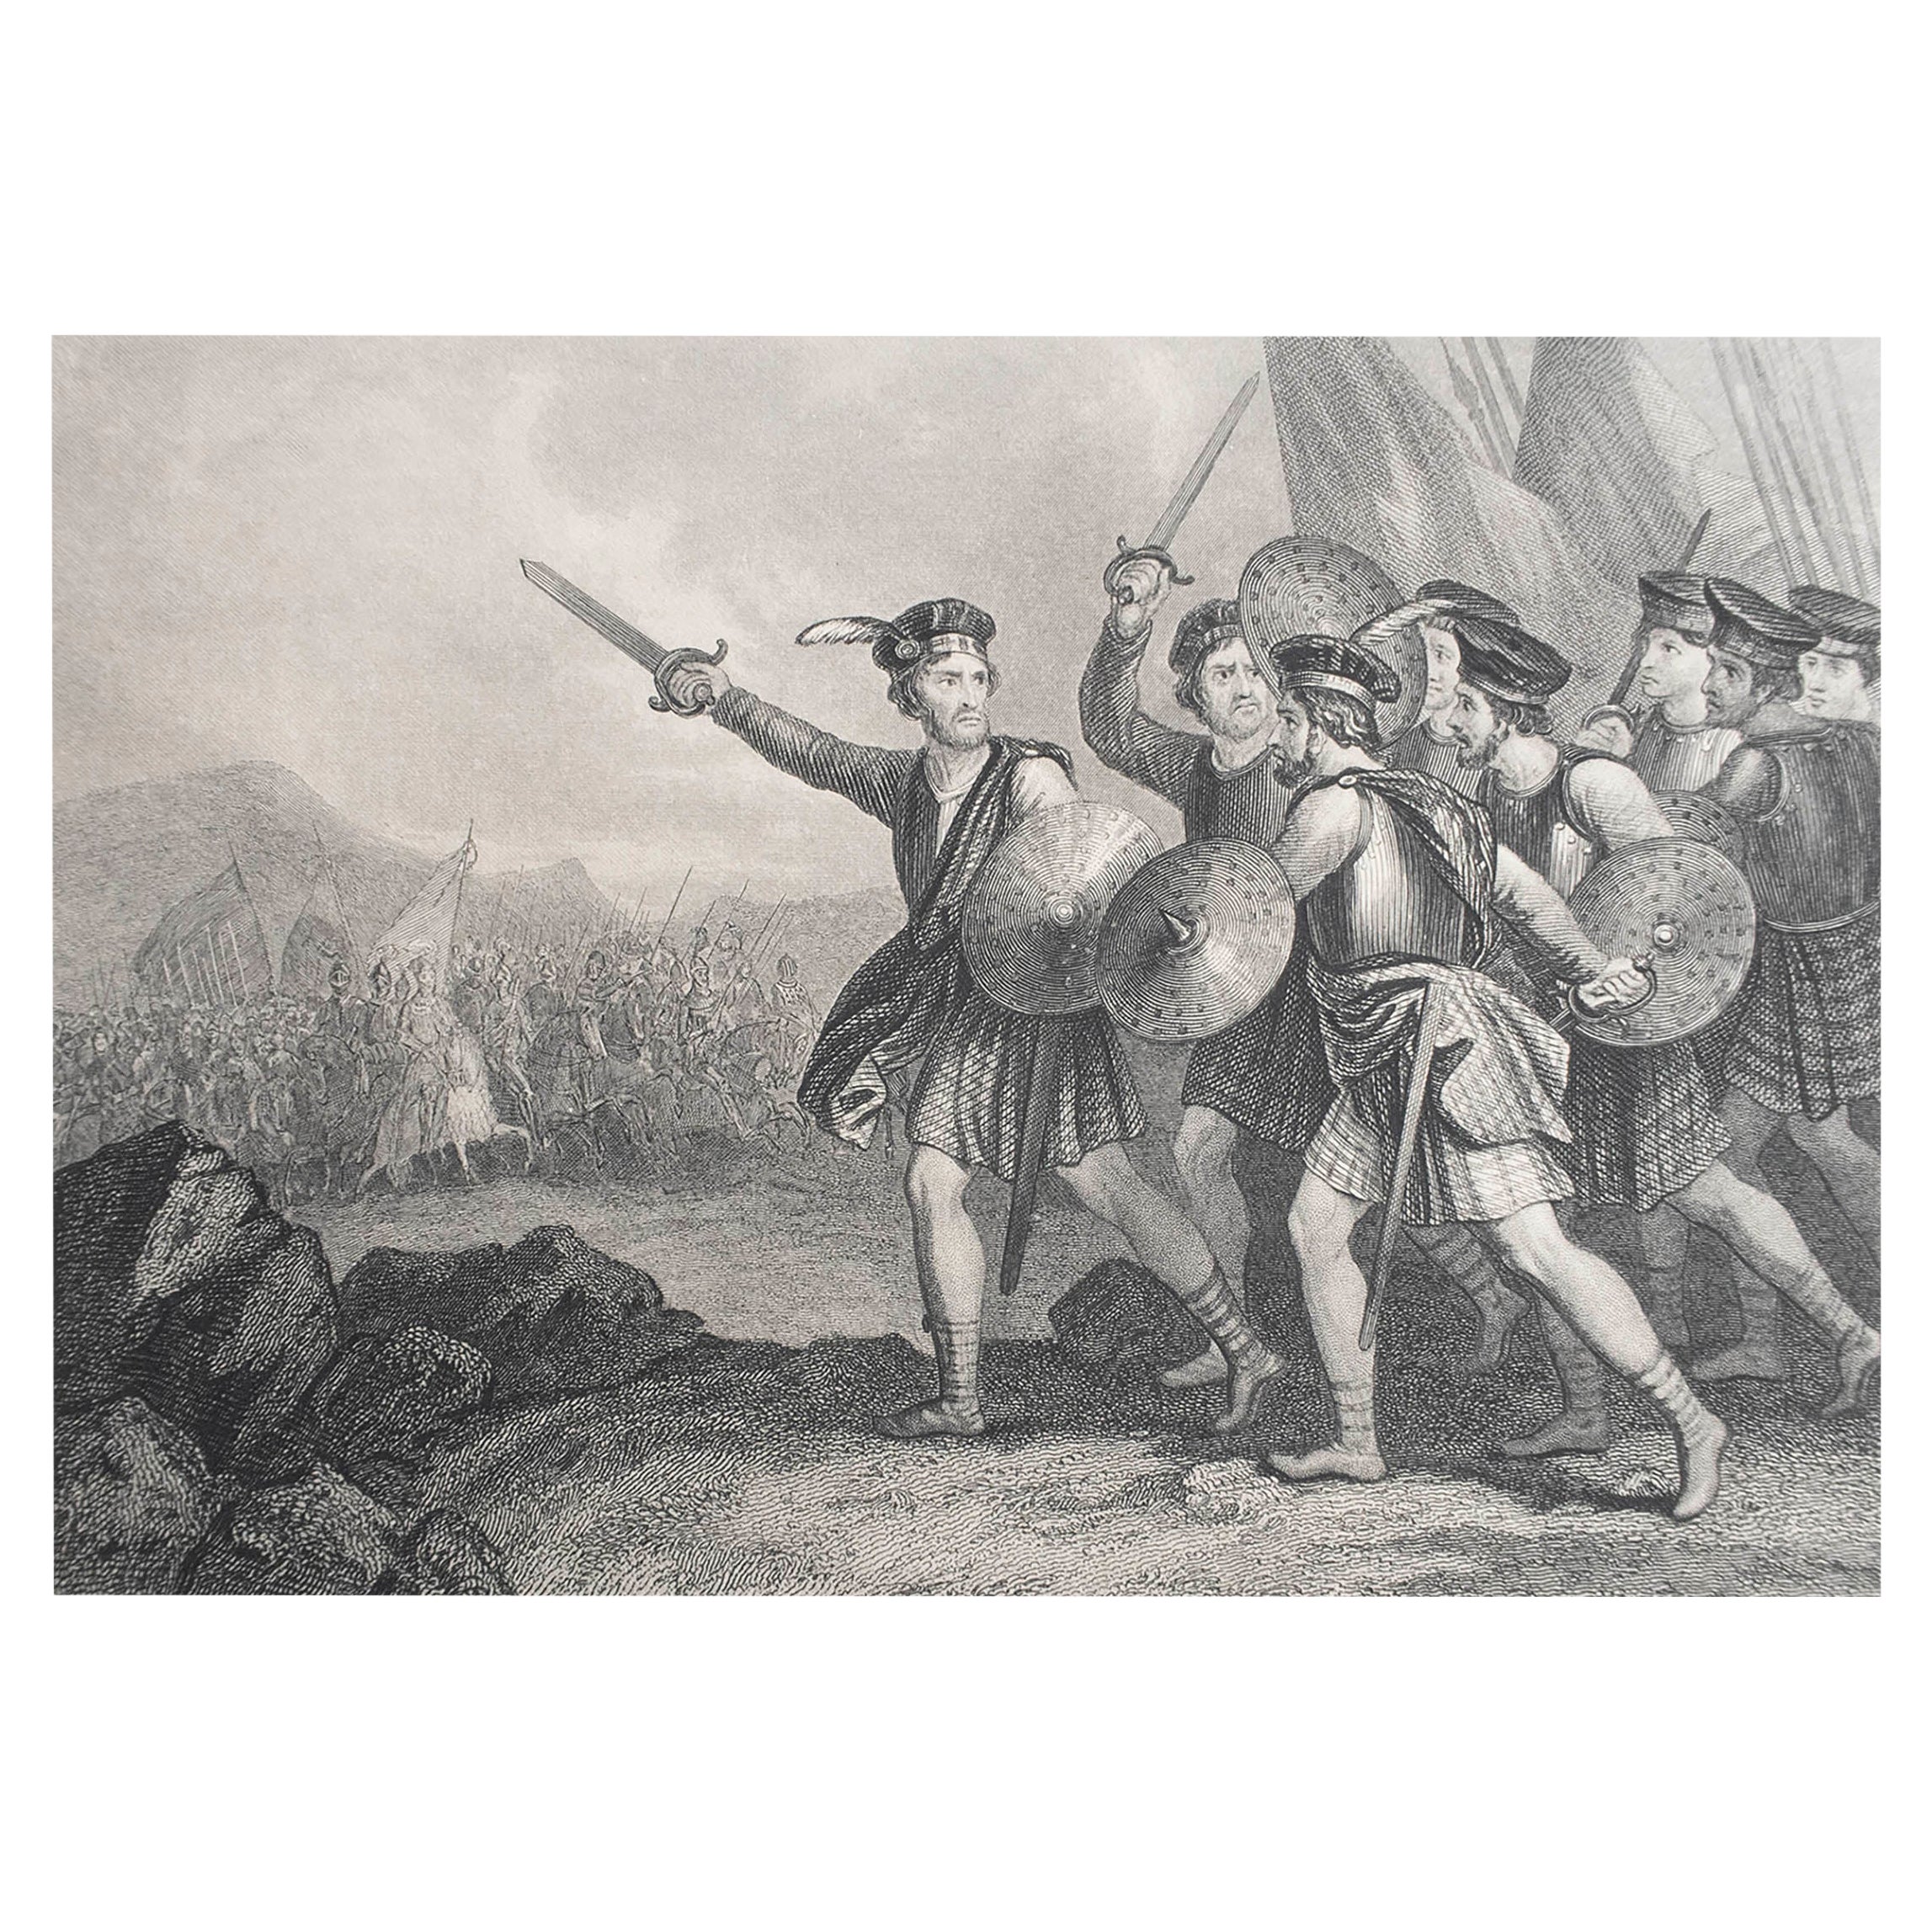 Grabado original antiguo de William Wallace en batalla. C.1850